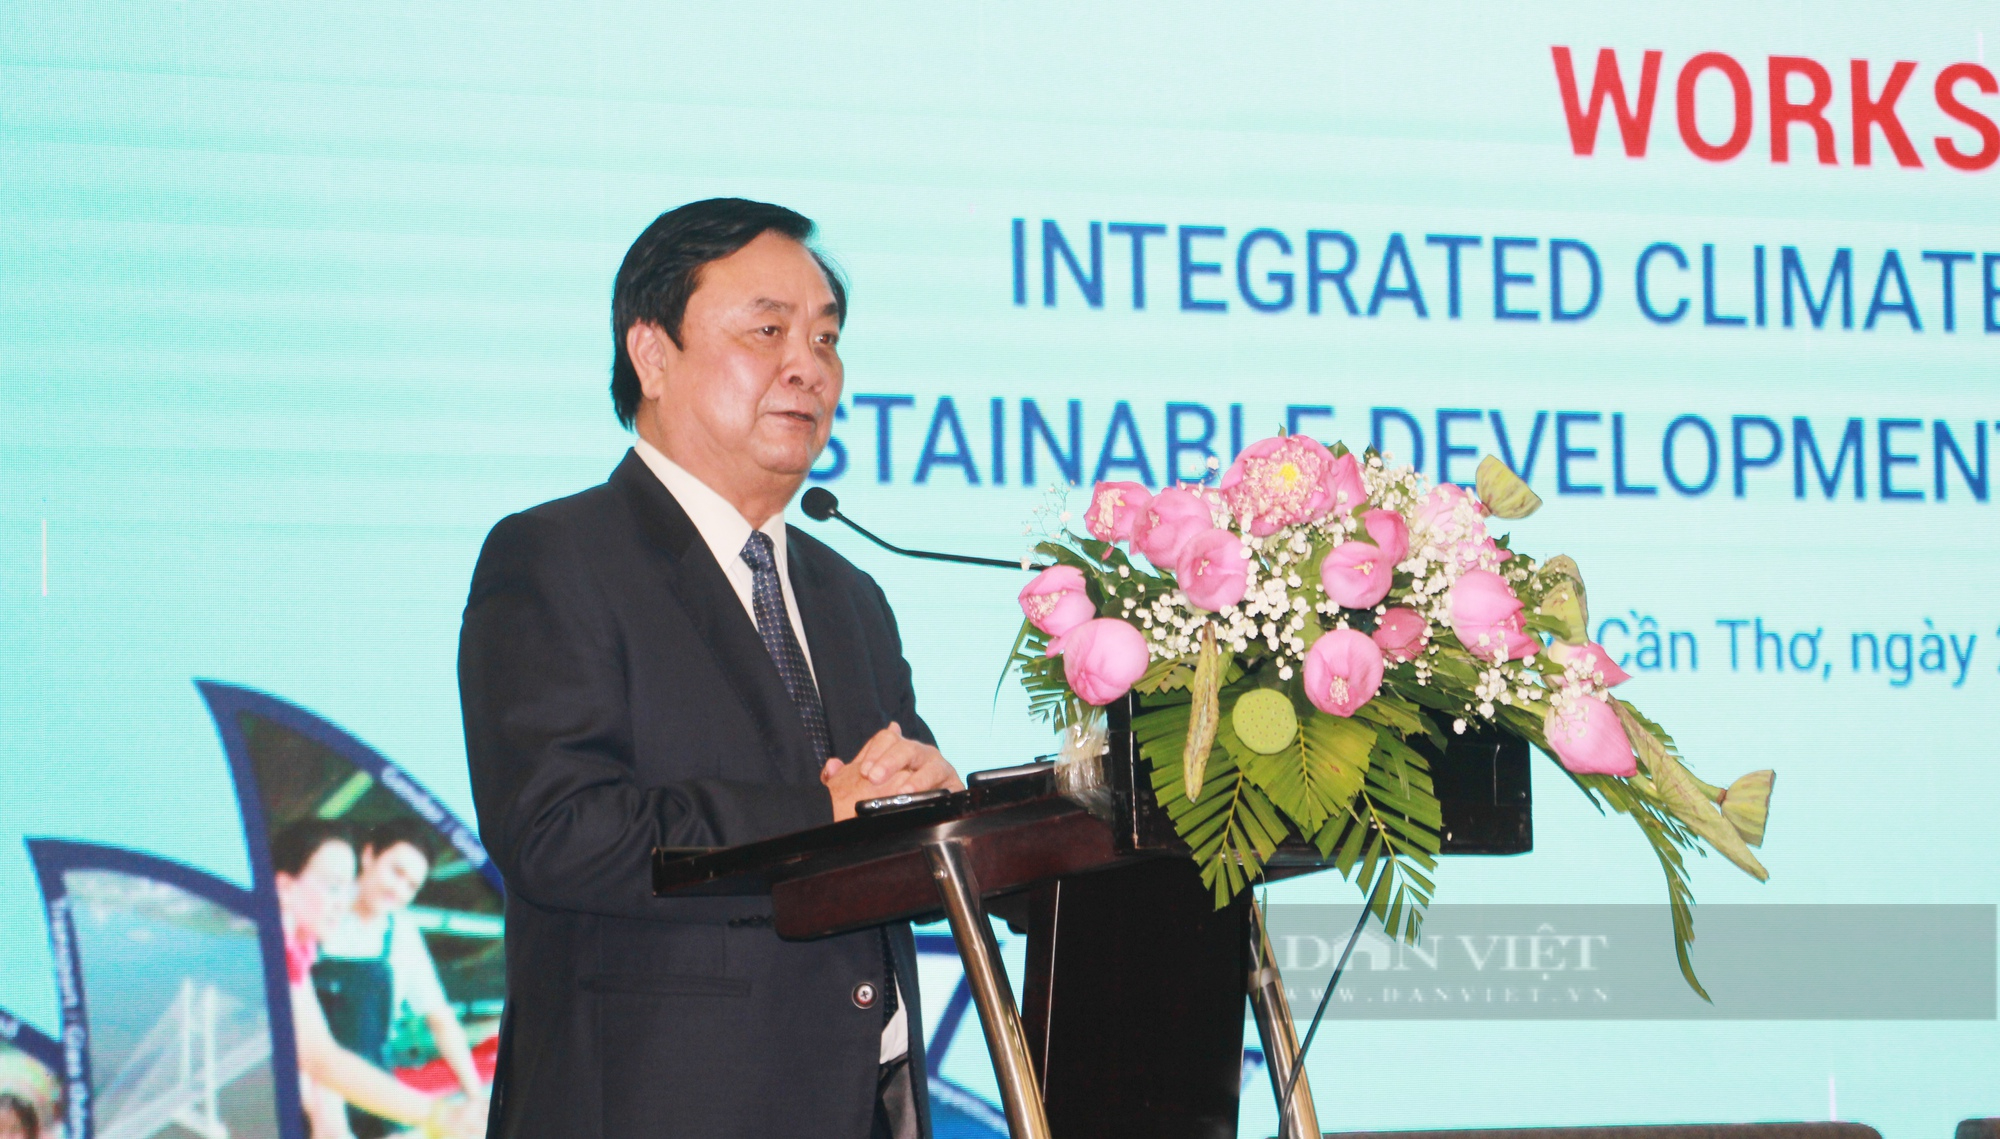 Bộ trưởng Lê Minh Hoan: Không kể lể, than phiền nữa về biến đổi khí hậu - Ảnh 1.